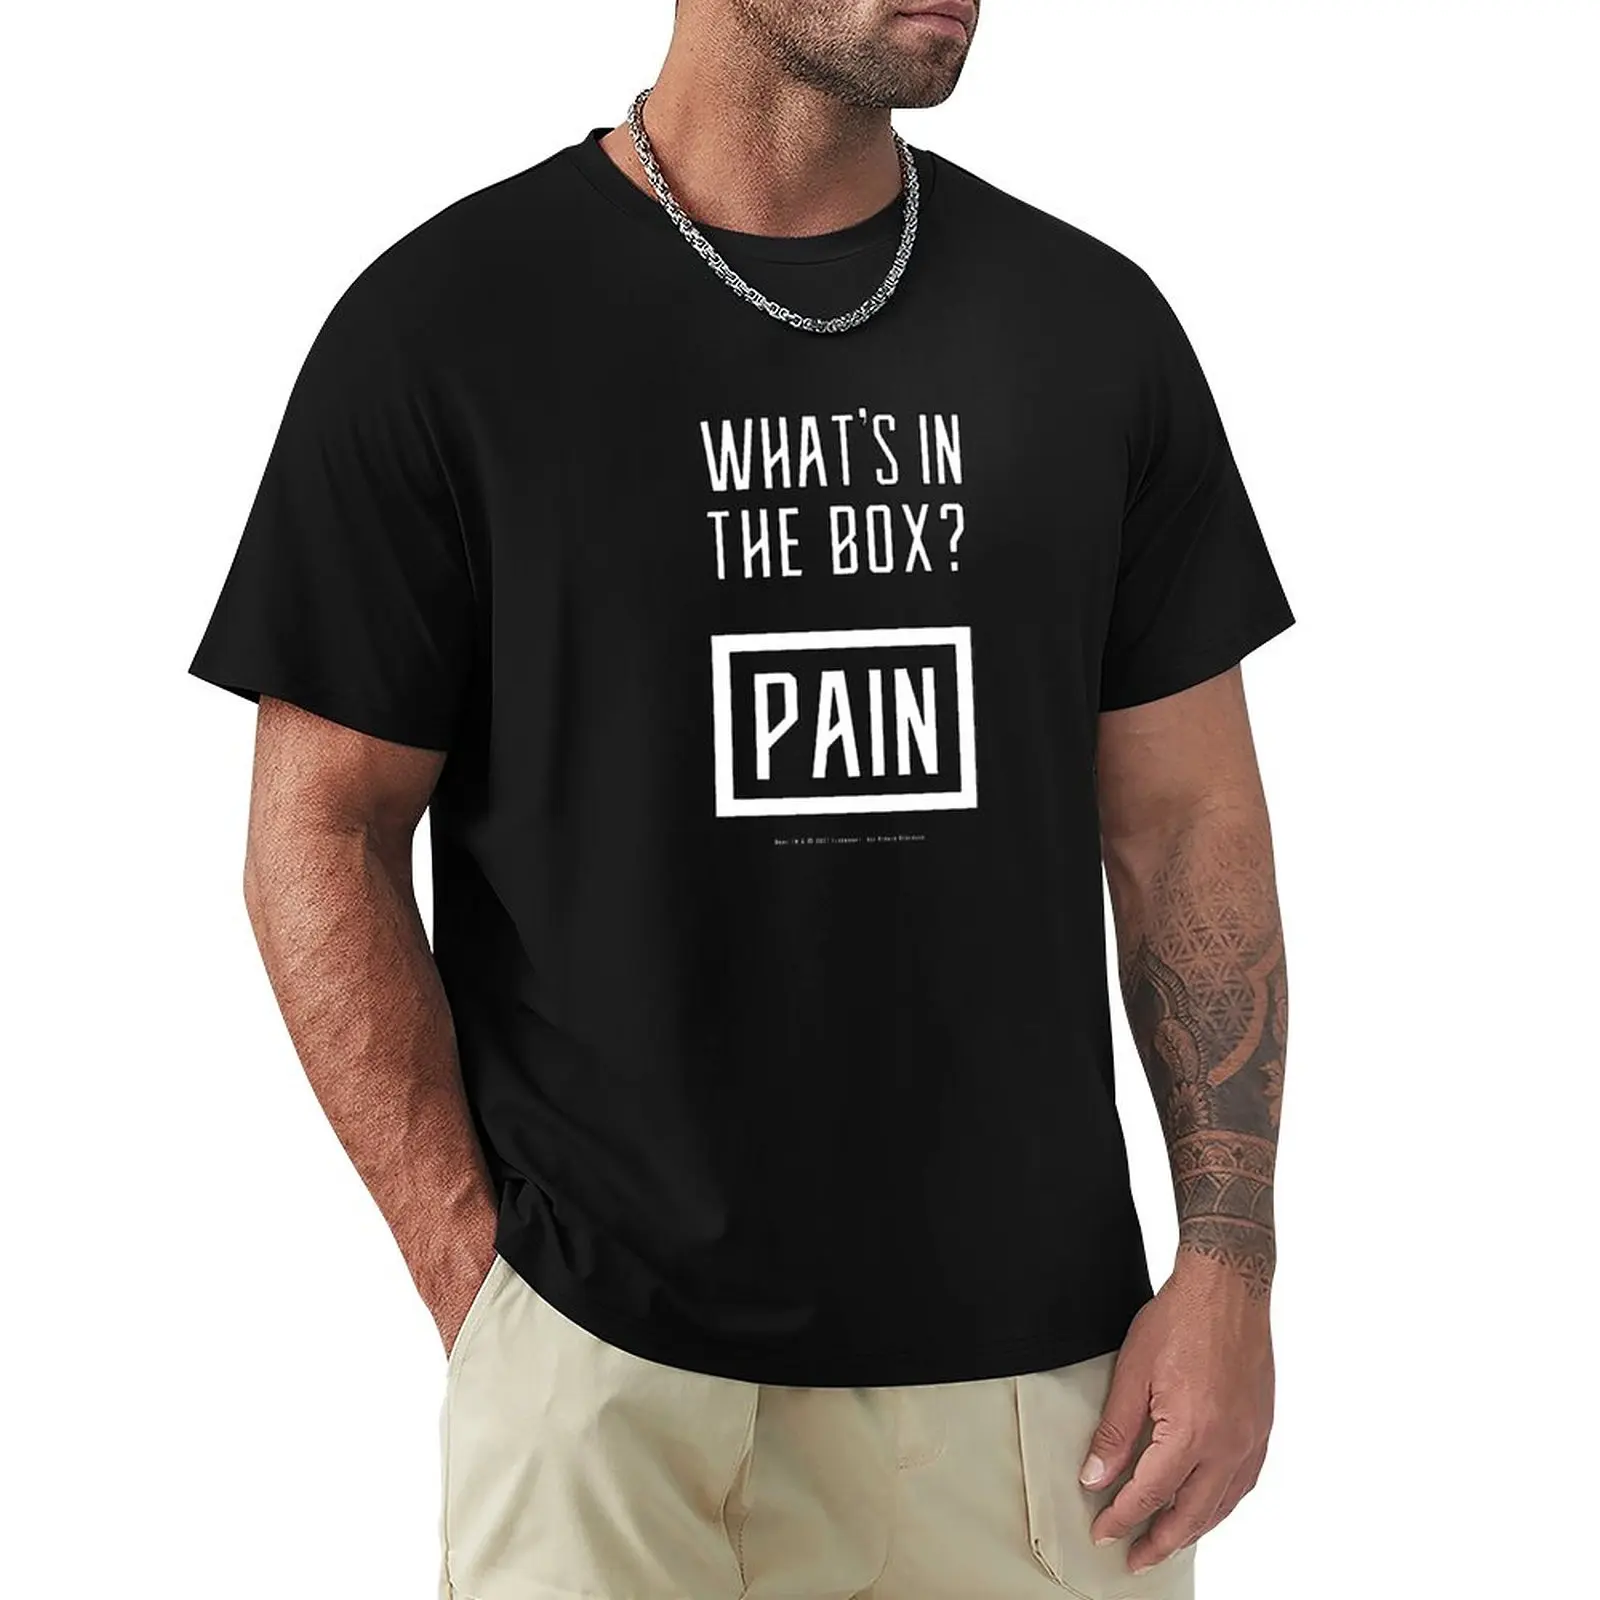 Dune - что в коробке? Pain (Белый) - Футболка с коротким рукавом, эстетичная одежда, черные футболки, мужские футболки в обтяжку. Изображение 0